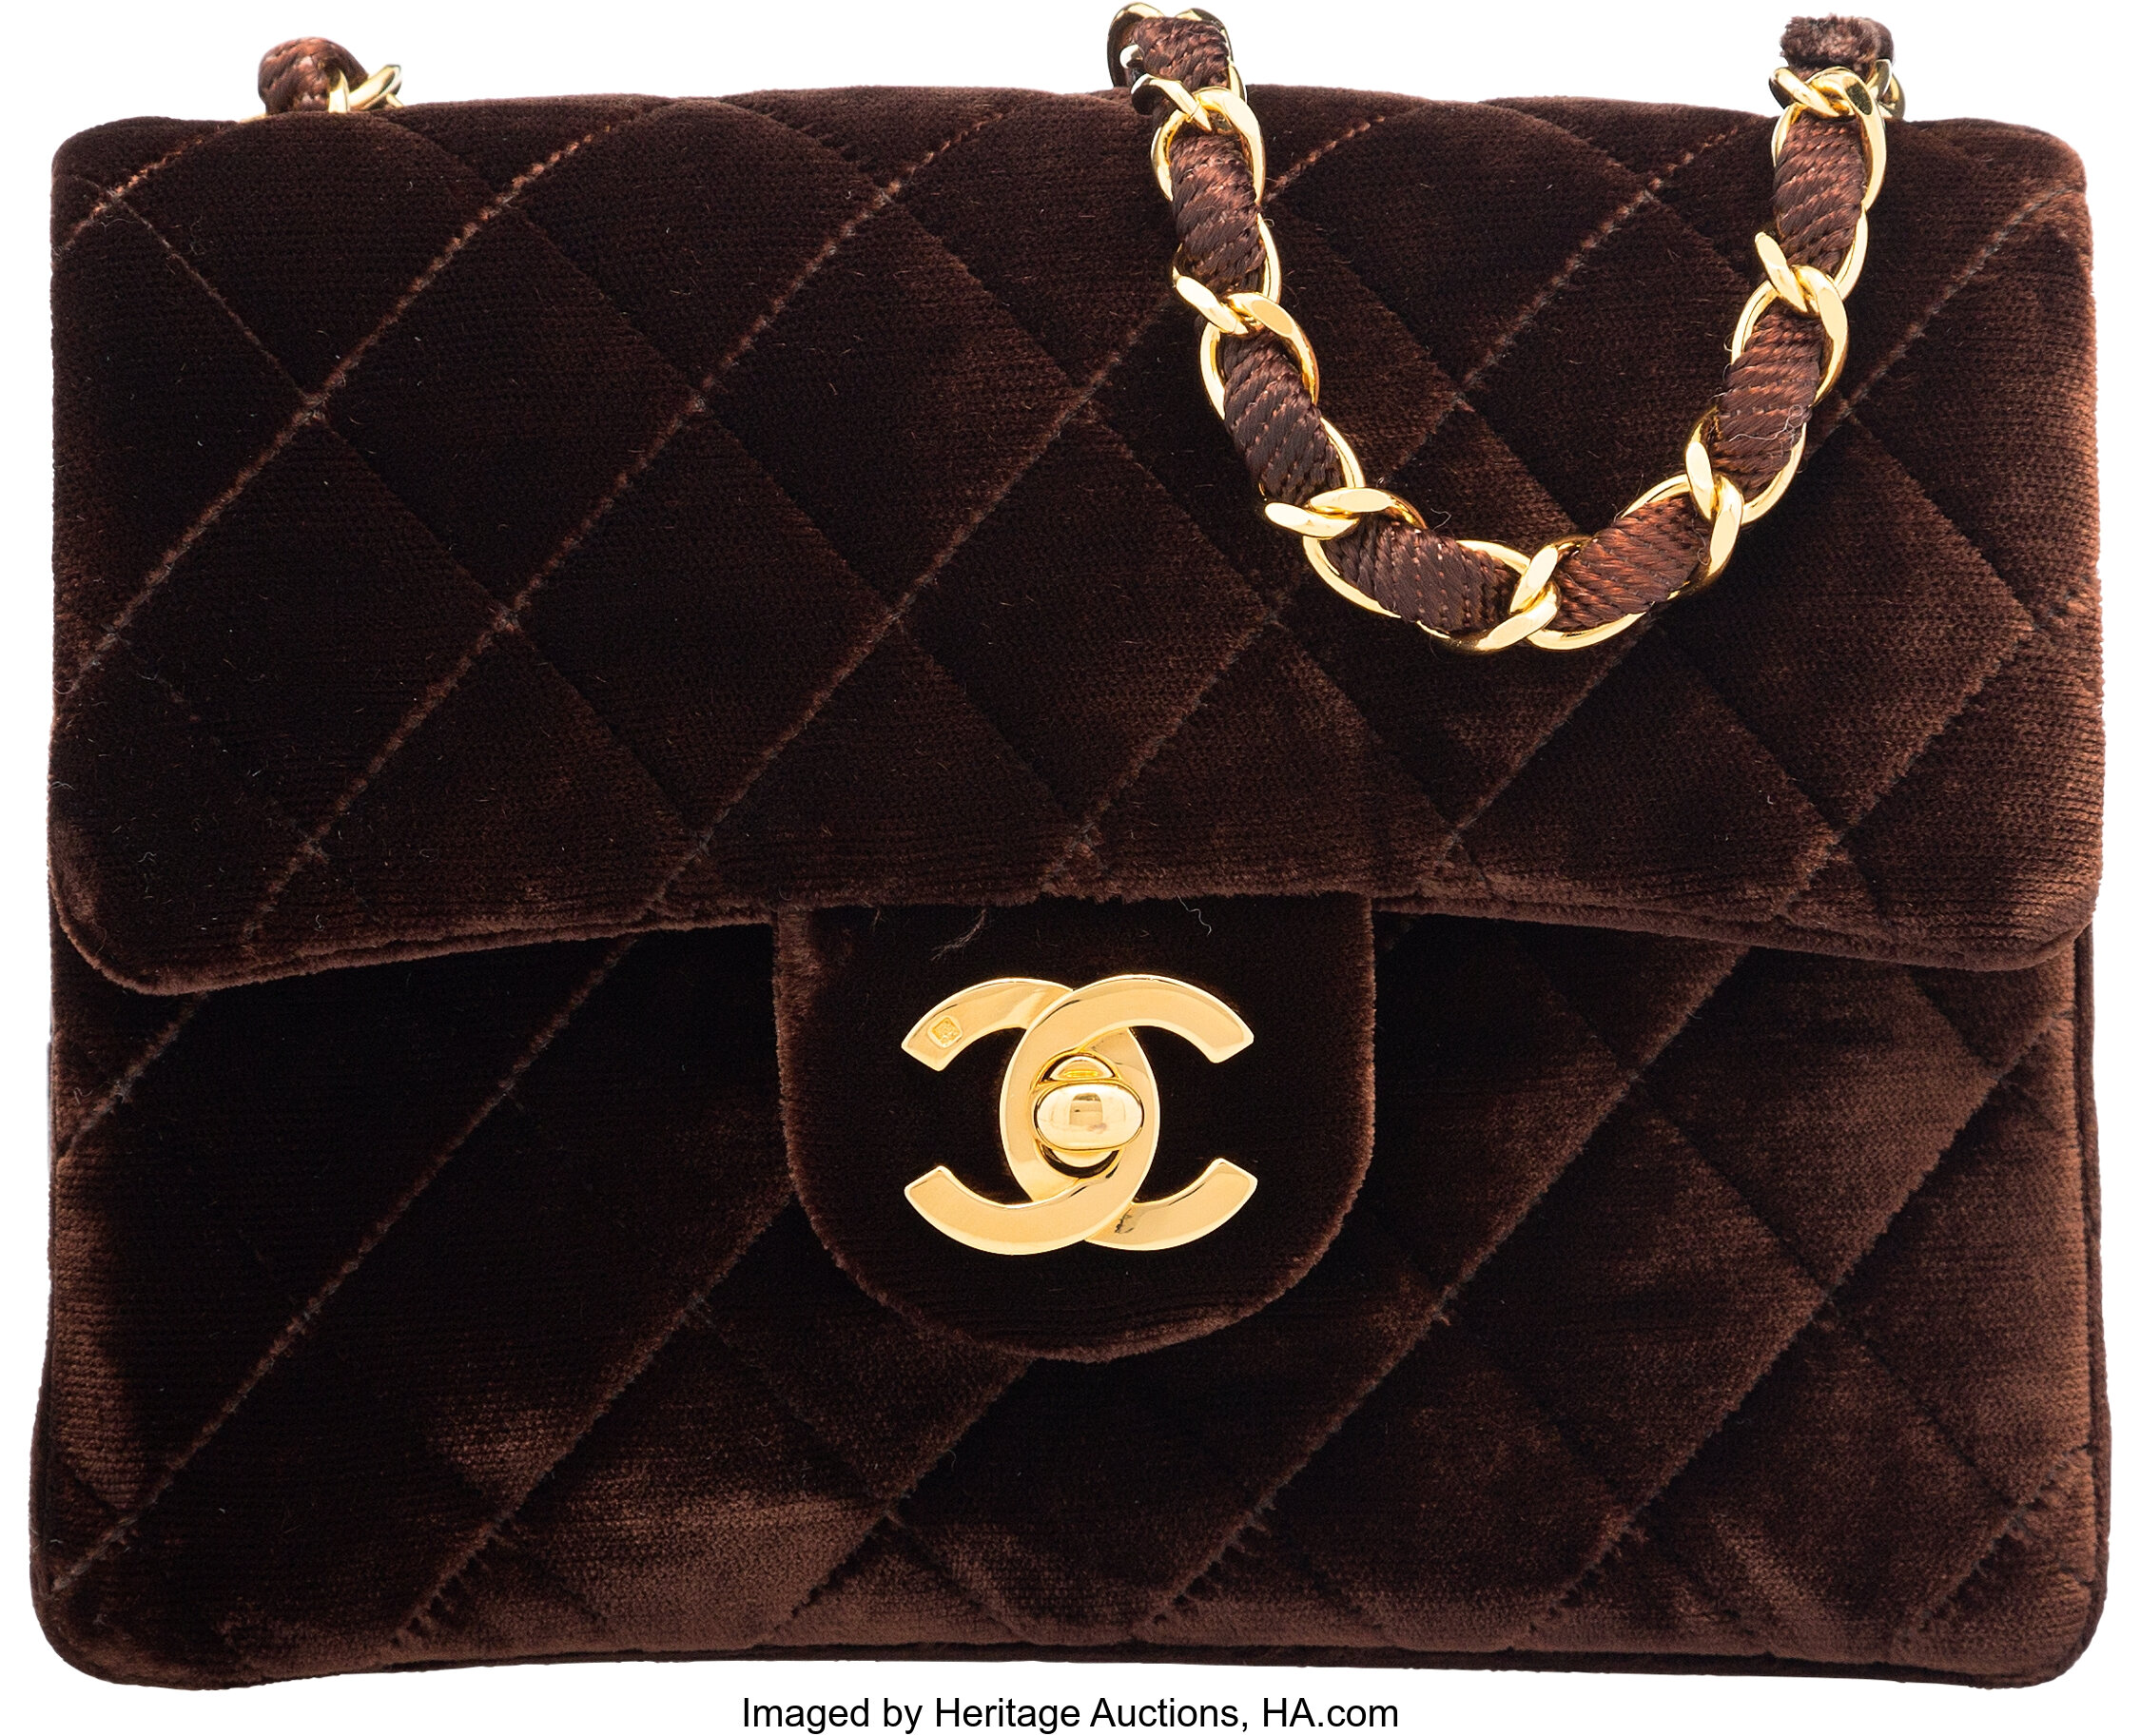 Pre-owned Velvet Handbag In Brown